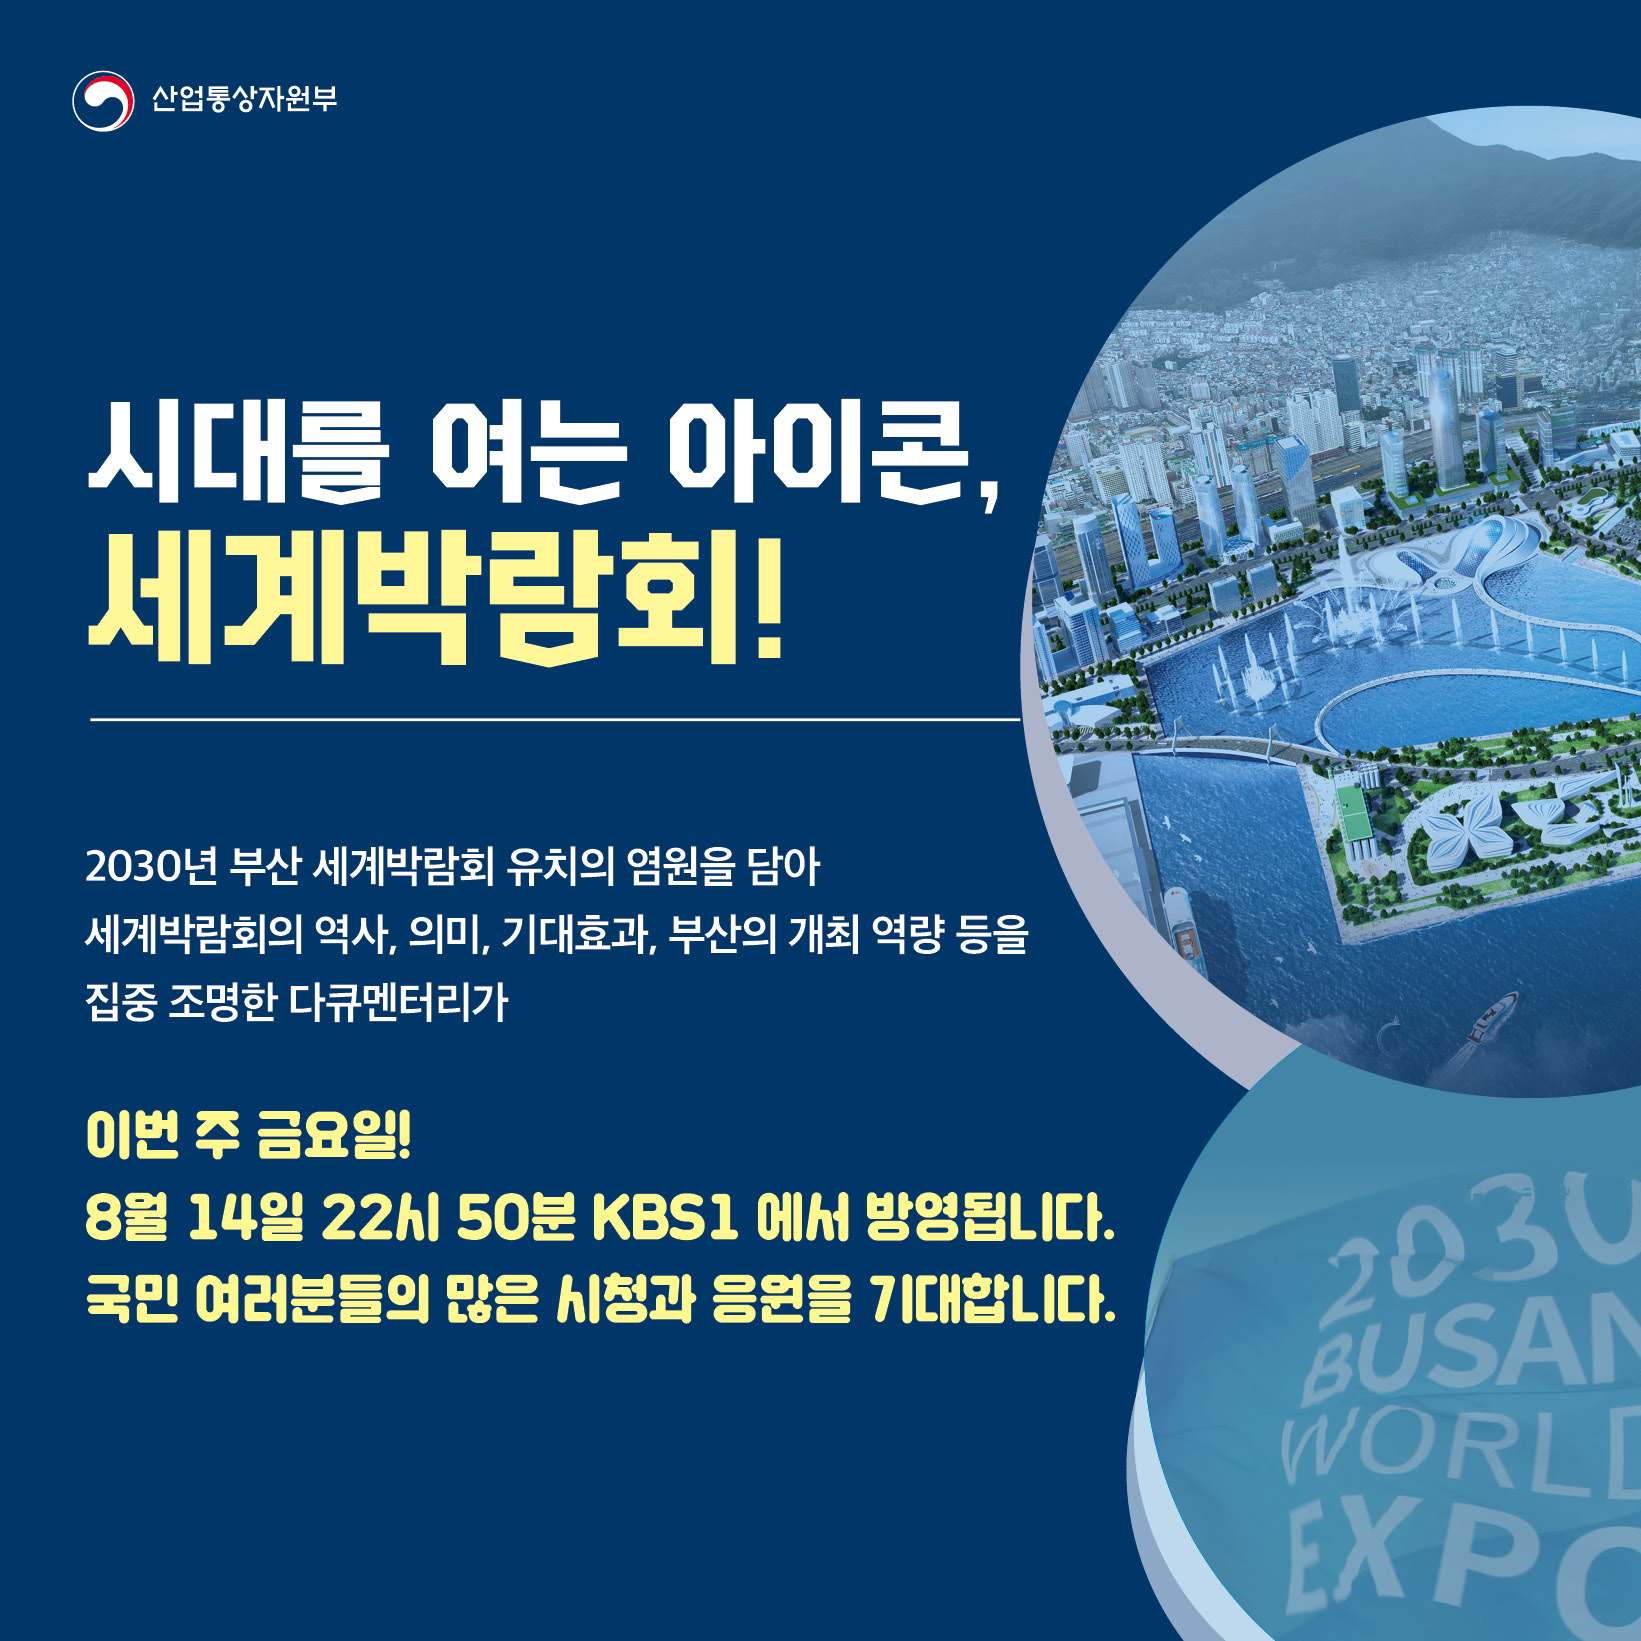 2030 부산세계박람회 유치 염원 다큐멘터리 방영 안내 1